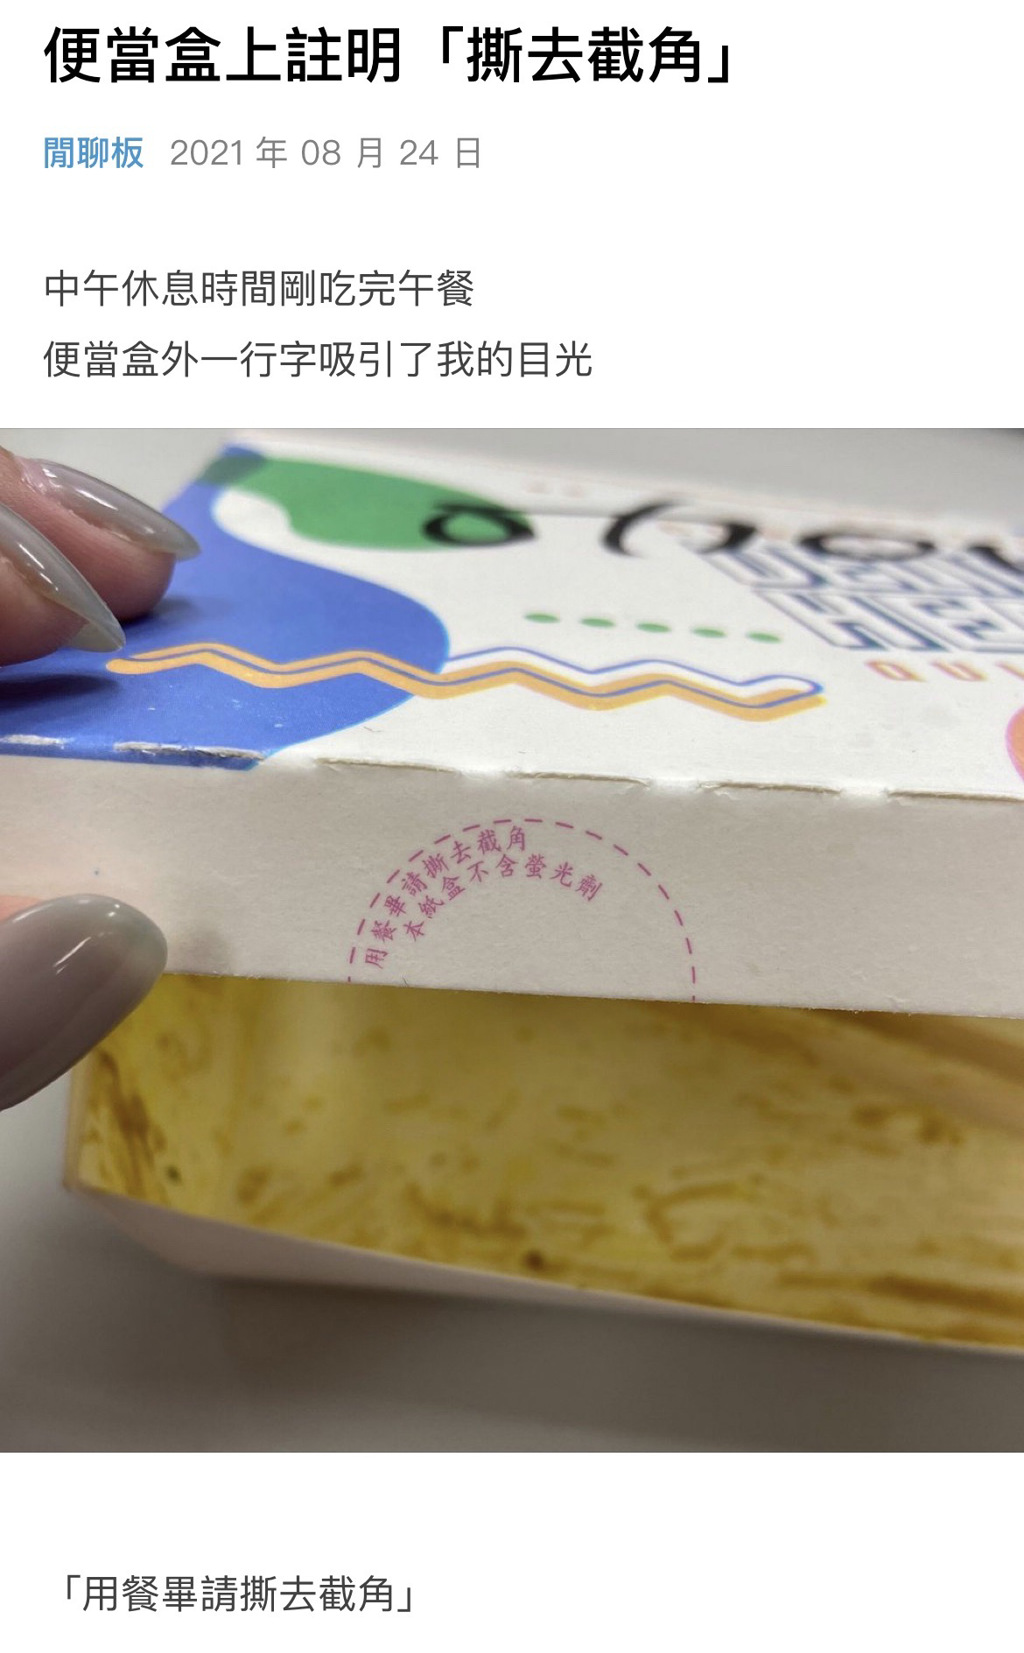 一名網友發現便當盒上寫著「用餐畢請撕去截角」的一行小字（圖/翻攝自Dcard）

